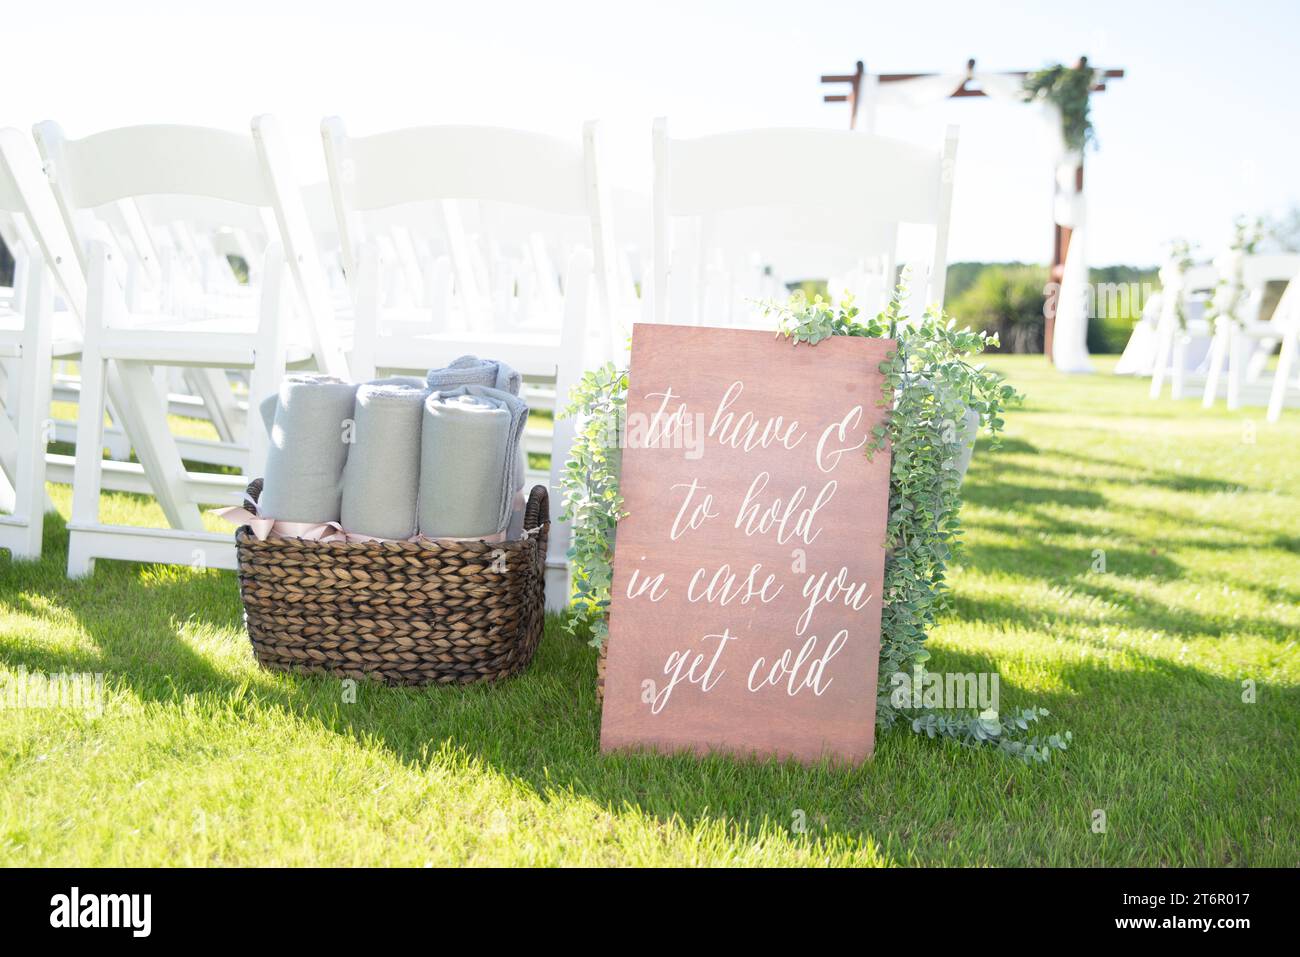 Un cartello di legno che recita "da avere e da custodire, si fa freddo" sull'erba durante la cerimonia di nozze davanti alle sedie bianche accanto al cestino di vimini con asciugamani Foto Stock